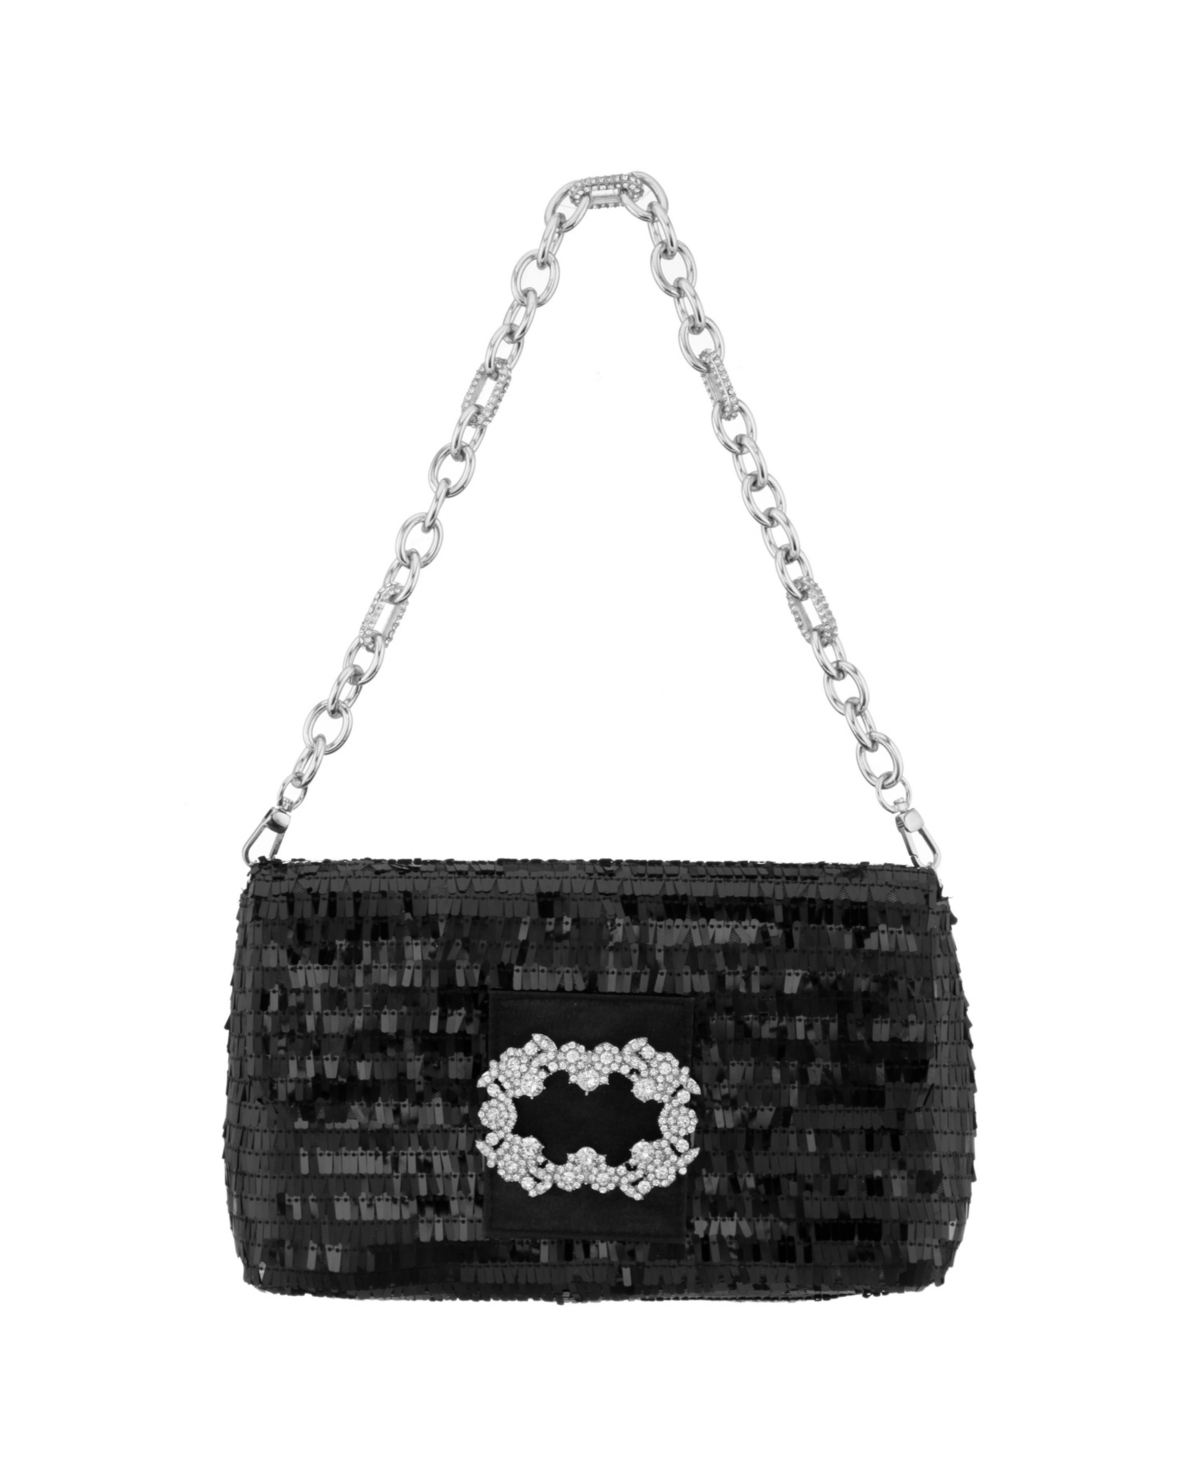 Women's Fringe Sequin Baguette Bag with Crystal Buckle Handbag - Black